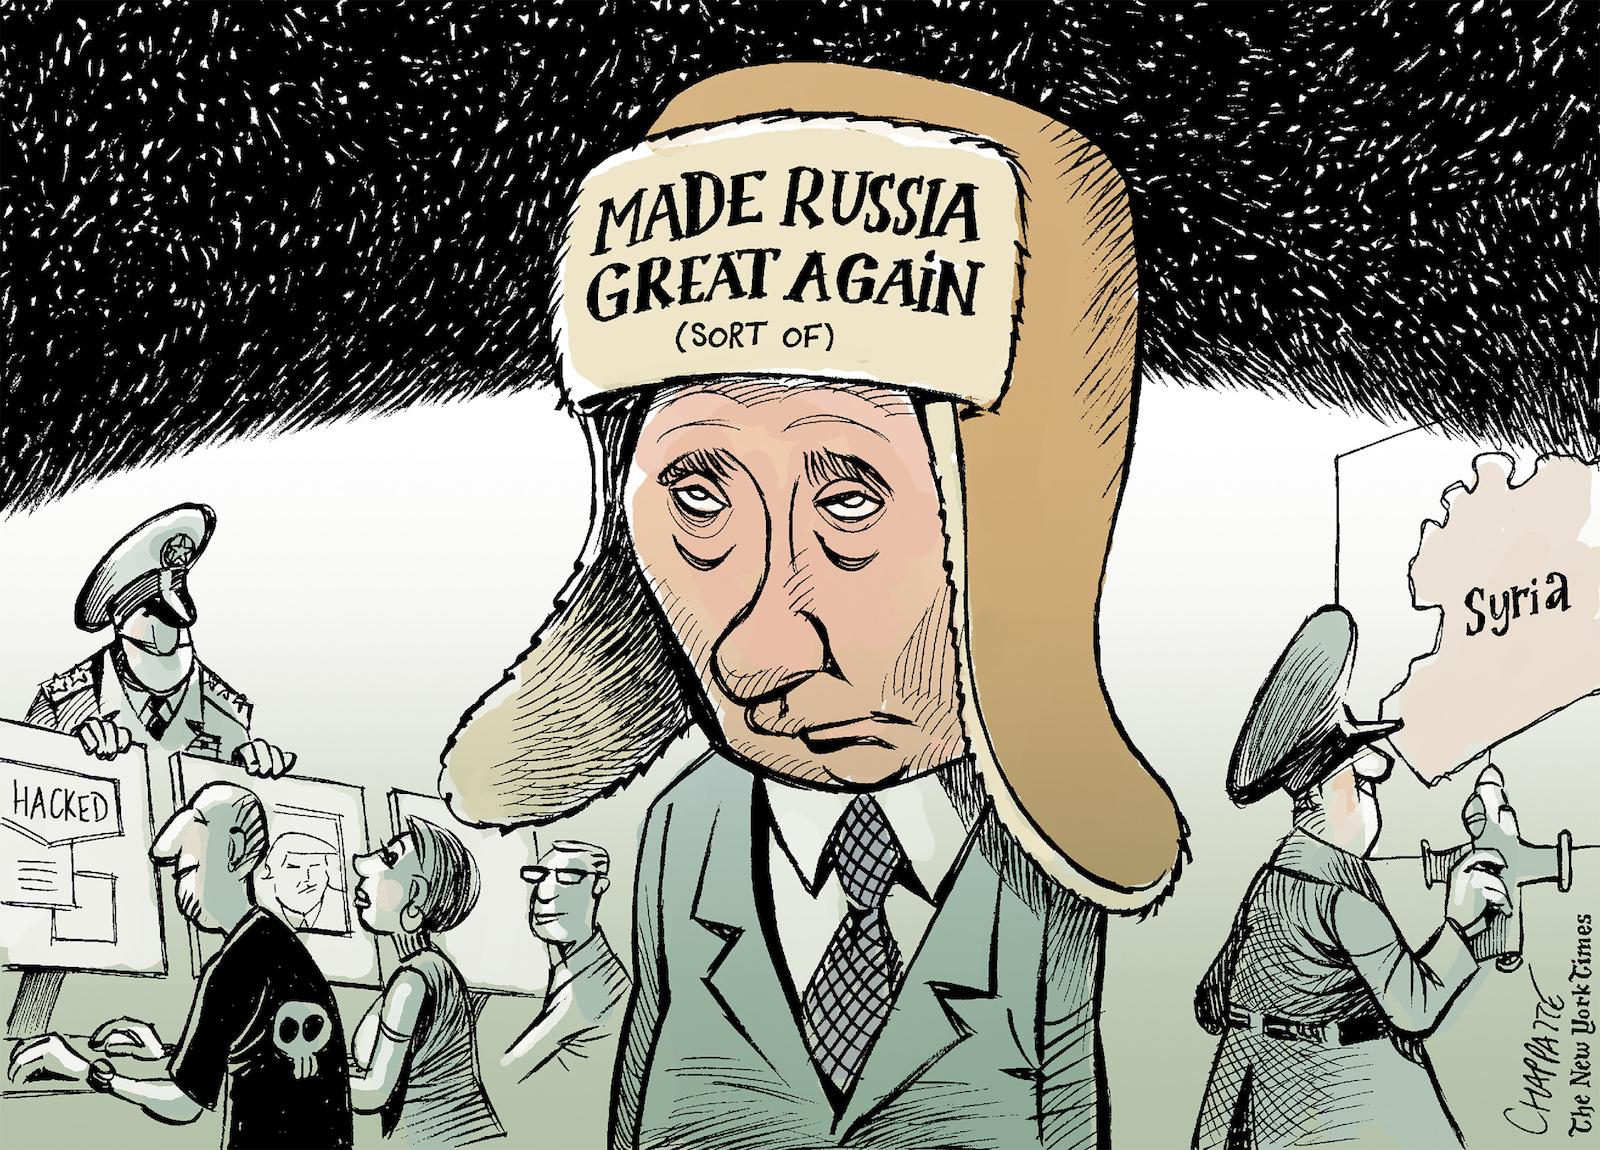 The year of Putin